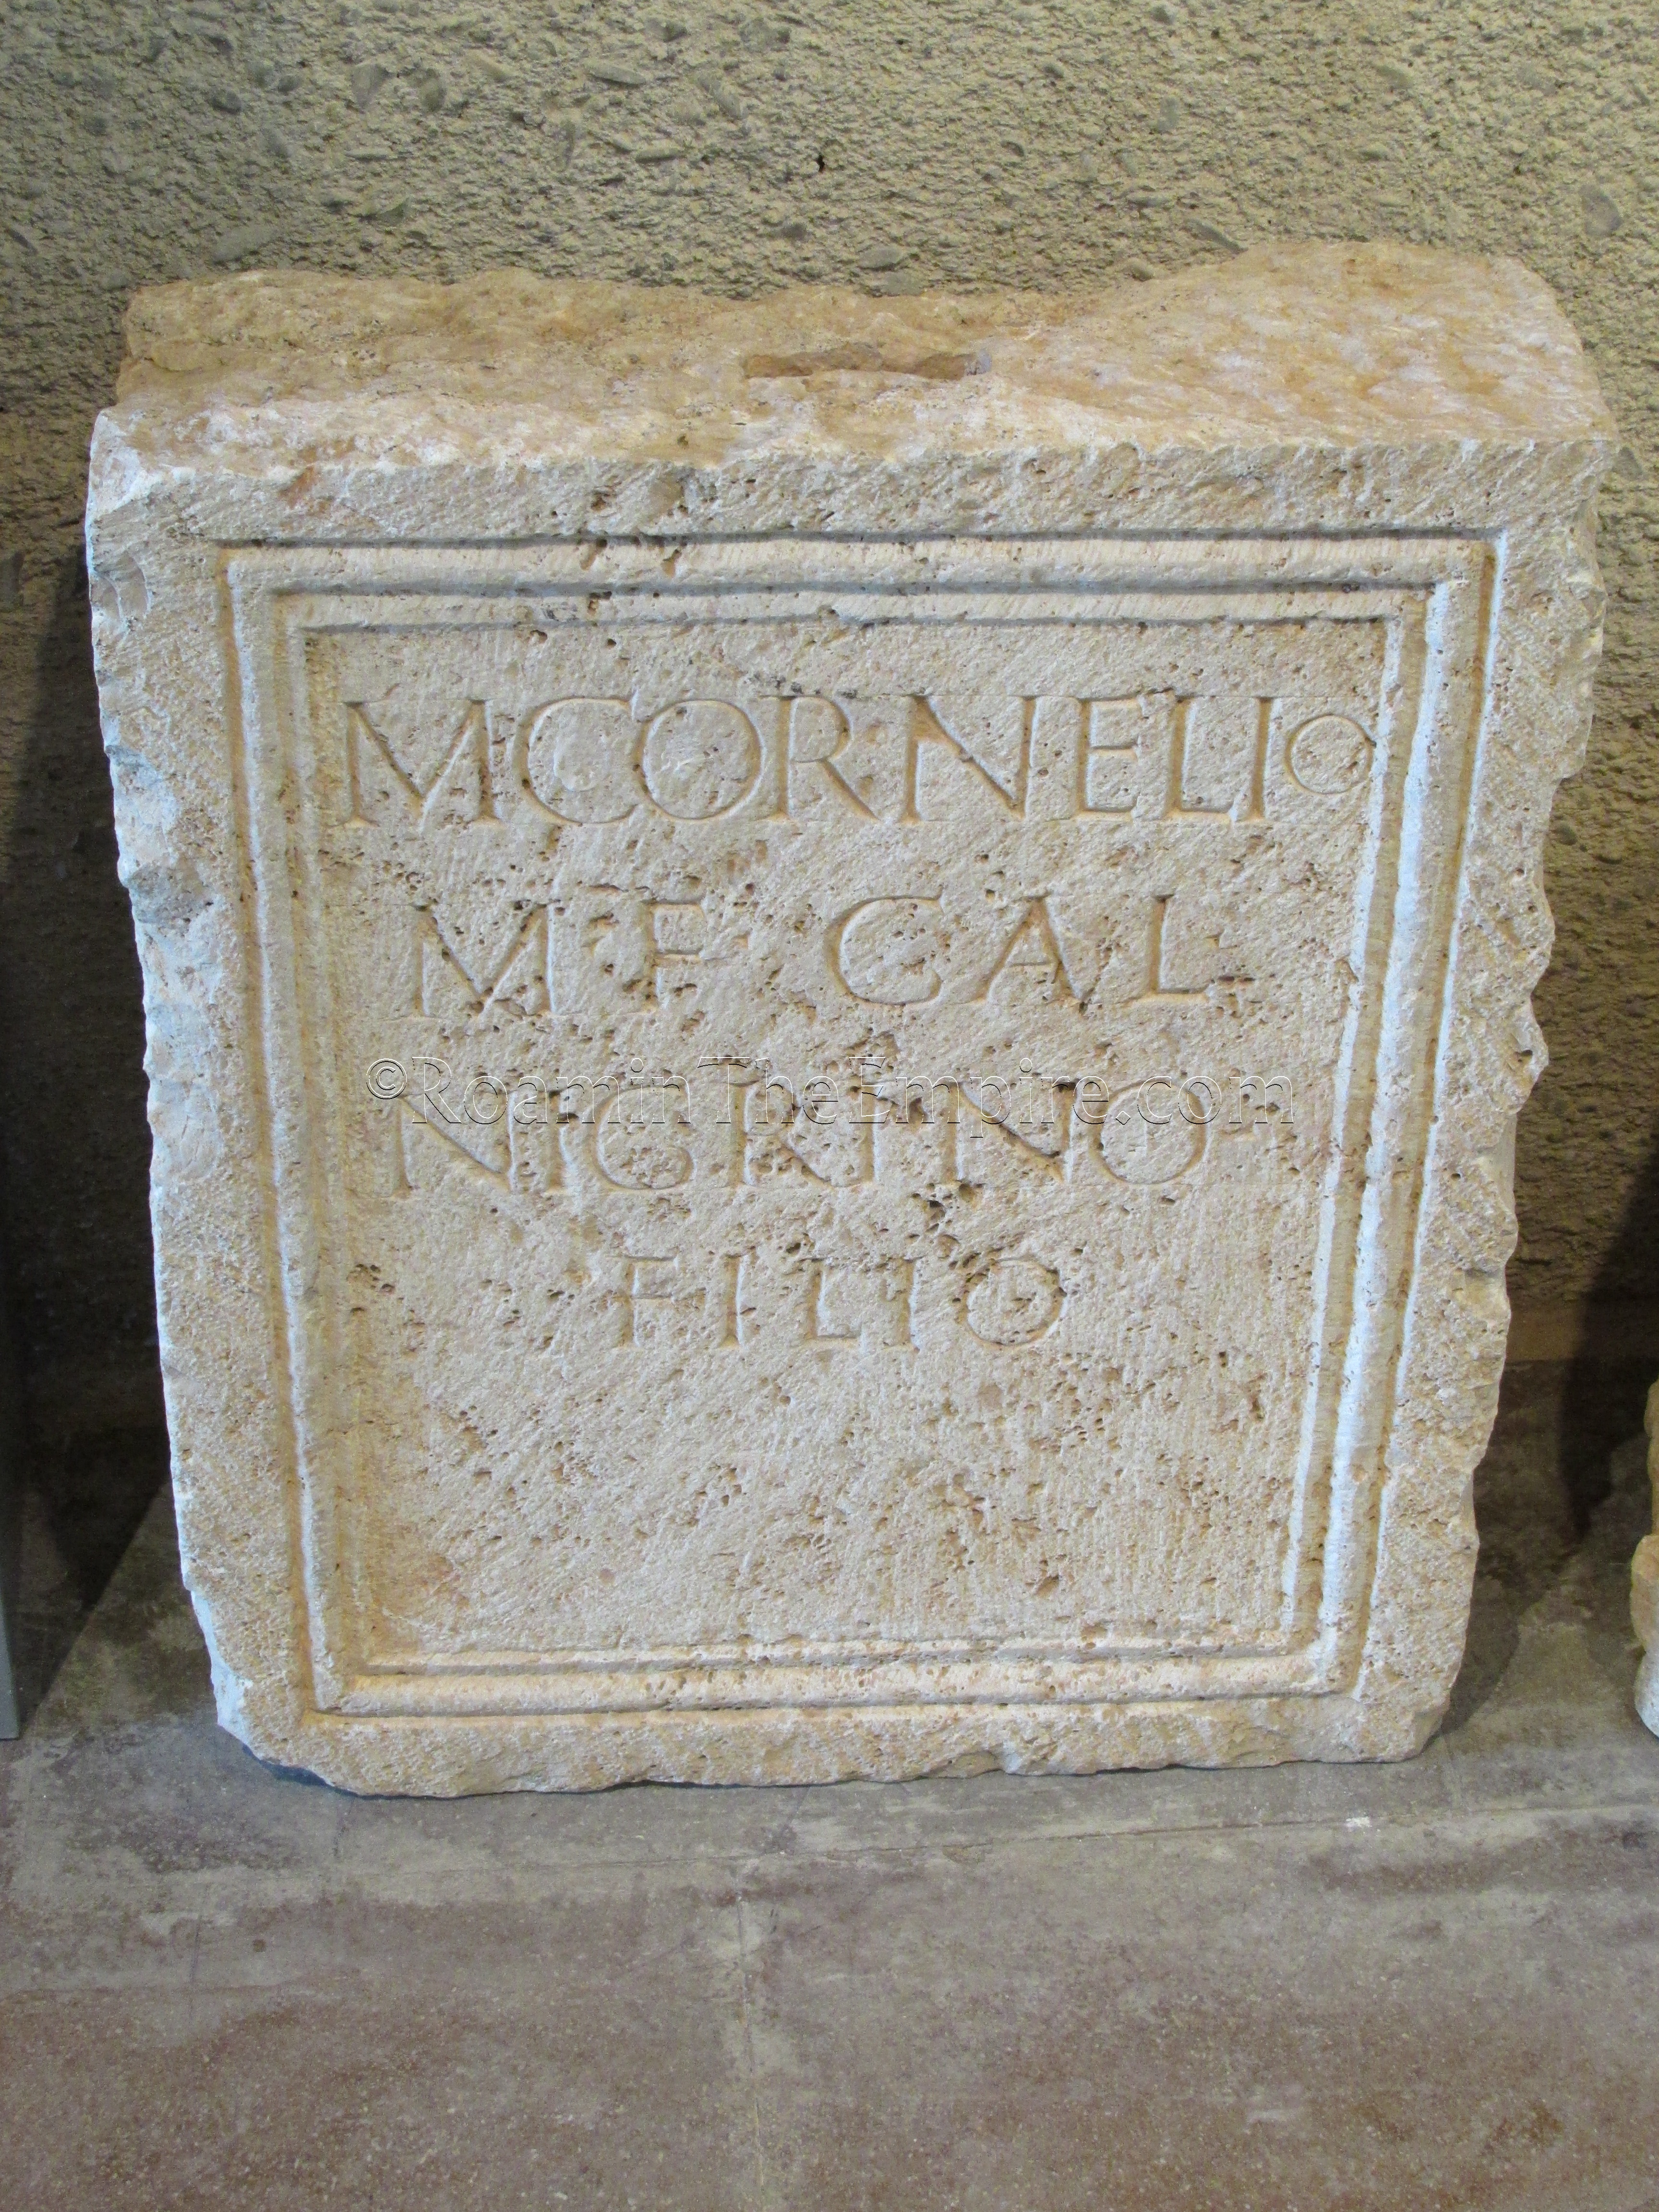 Honorific inscription of Marcus Cornelius Nigrinus of the Galeria tribe.